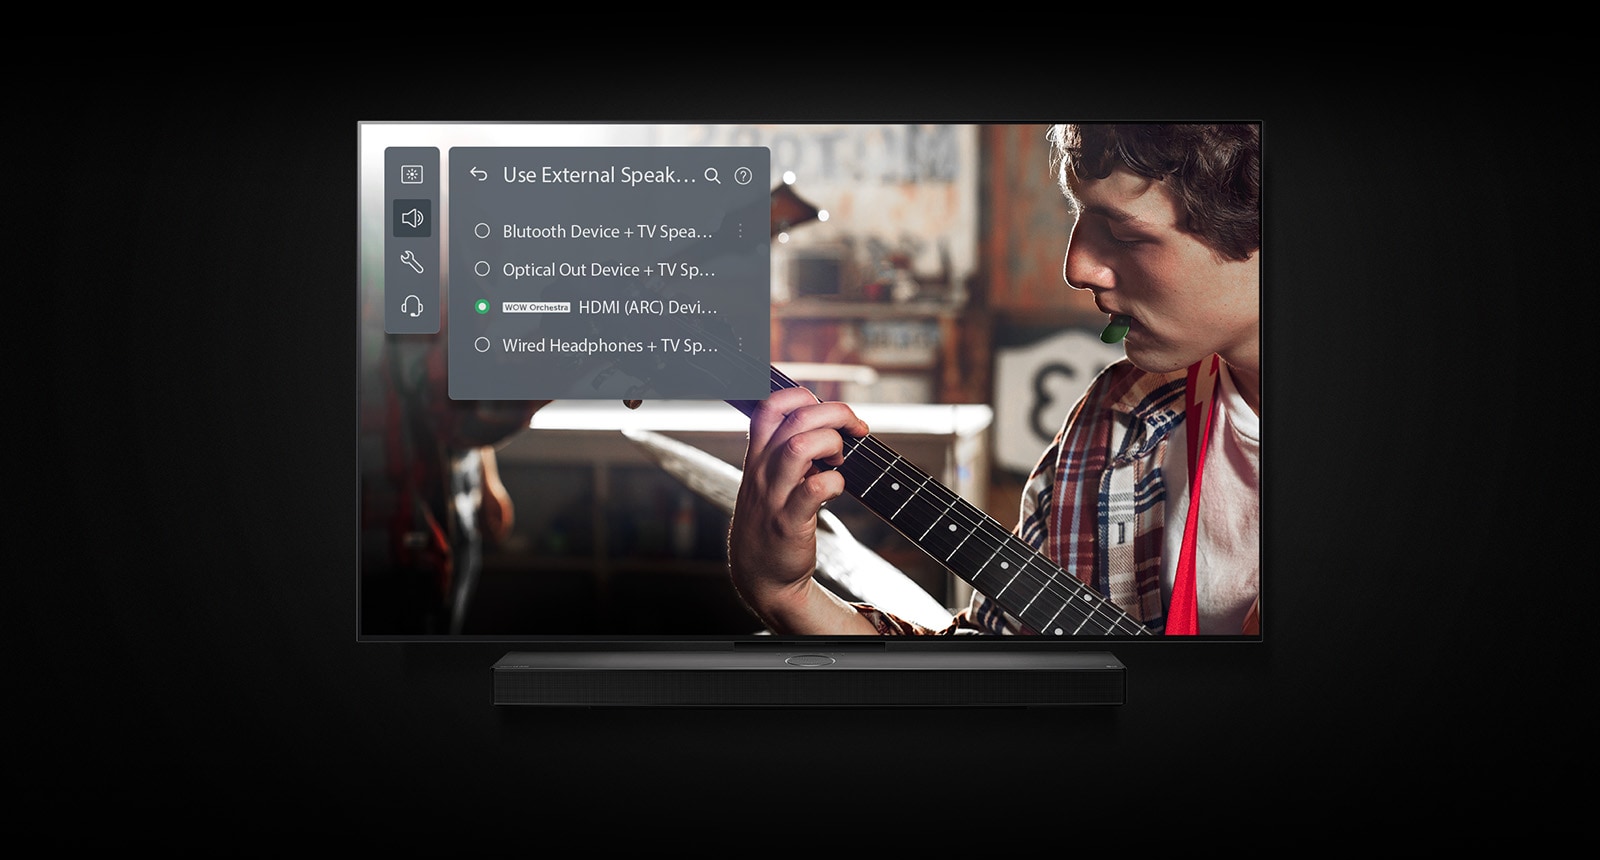 A képen az LG OLED TV látható egy hangprojektorral. A videóban egy fiú gitározik, fölötte pedig láthatók a hangprojektormód beállításai. 